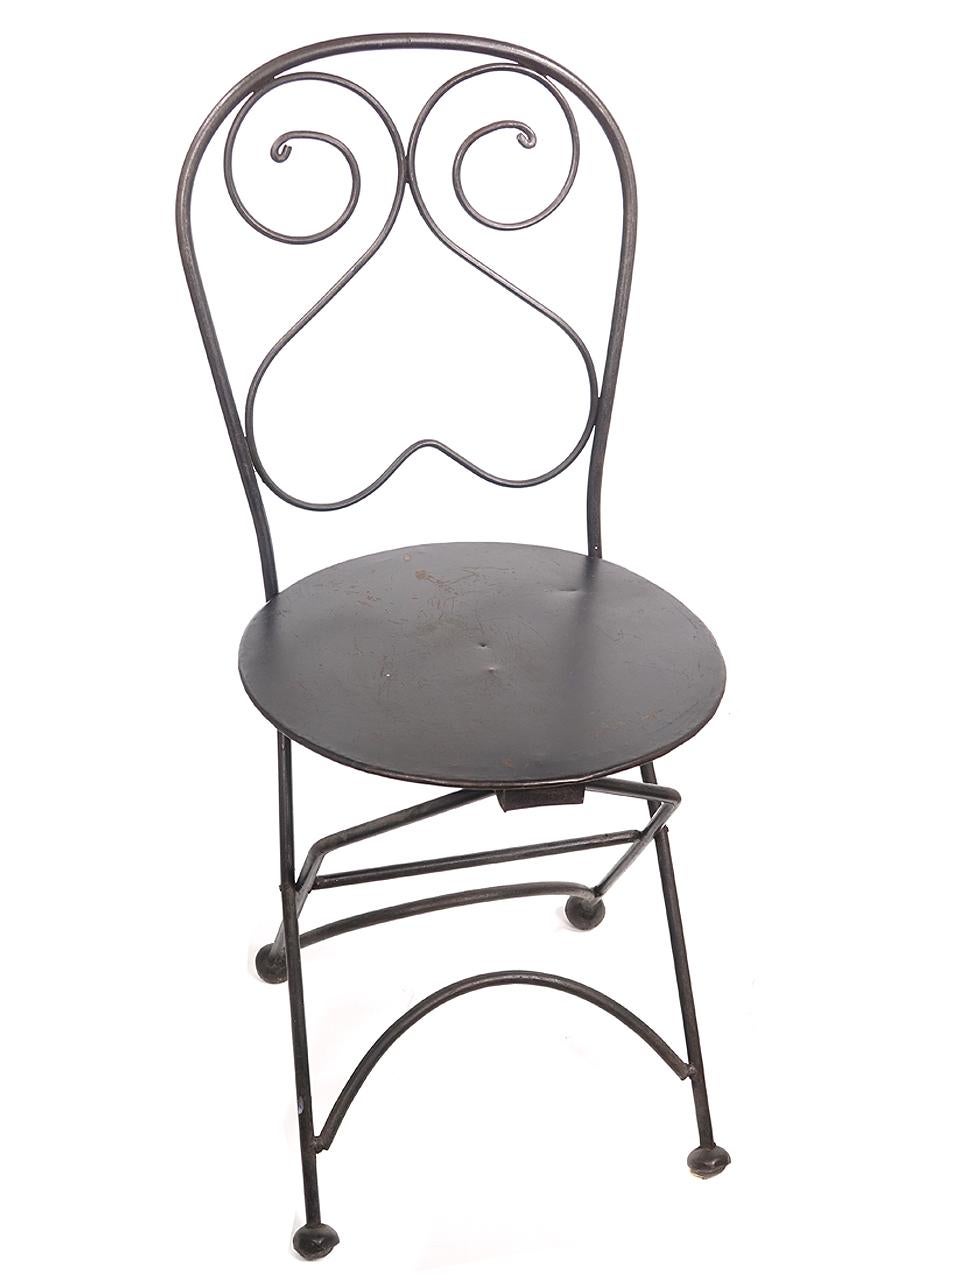 Il est difficile de lier une chaise pliante à un style quelconque. Avec son fer laminé et ses pieds en forme de boule, son ichair a un look unique et léger de bistrot. Nous n'avons qu'une seule chaise mais parfois c'est tout ce dont on a besoin.